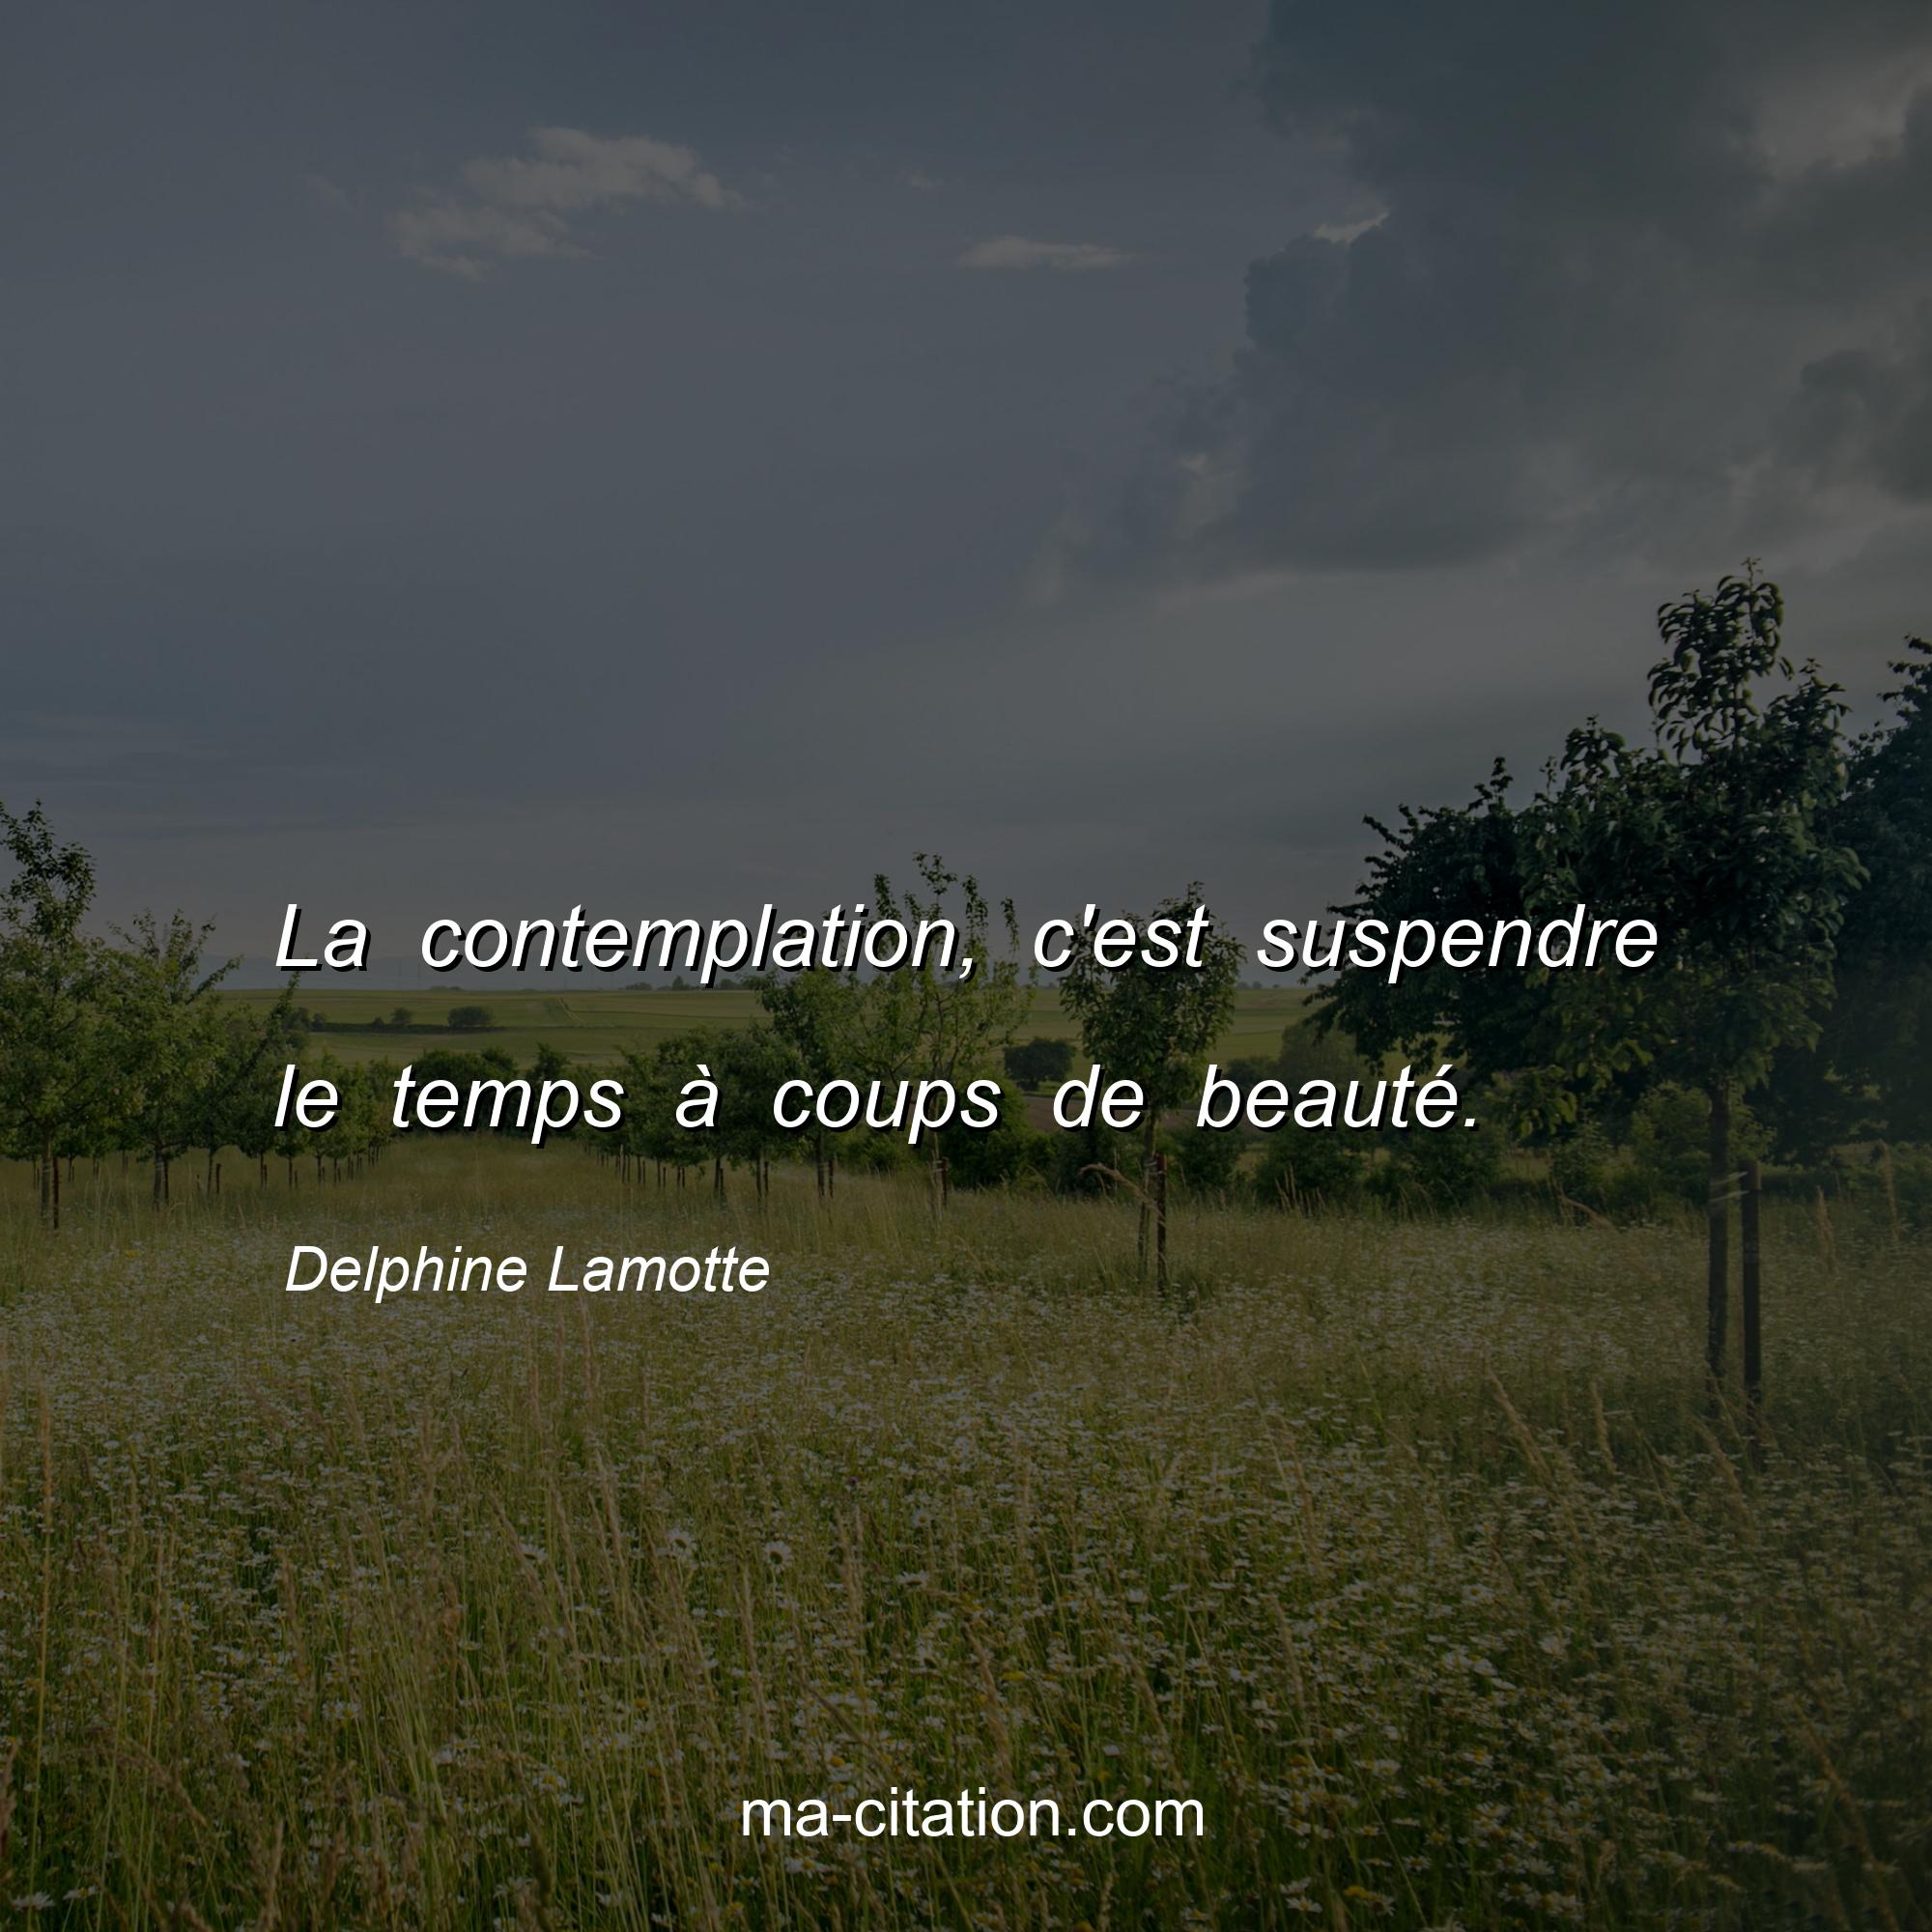 Delphine Lamotte : La contemplation, c'est suspendre le temps à coups de beauté.